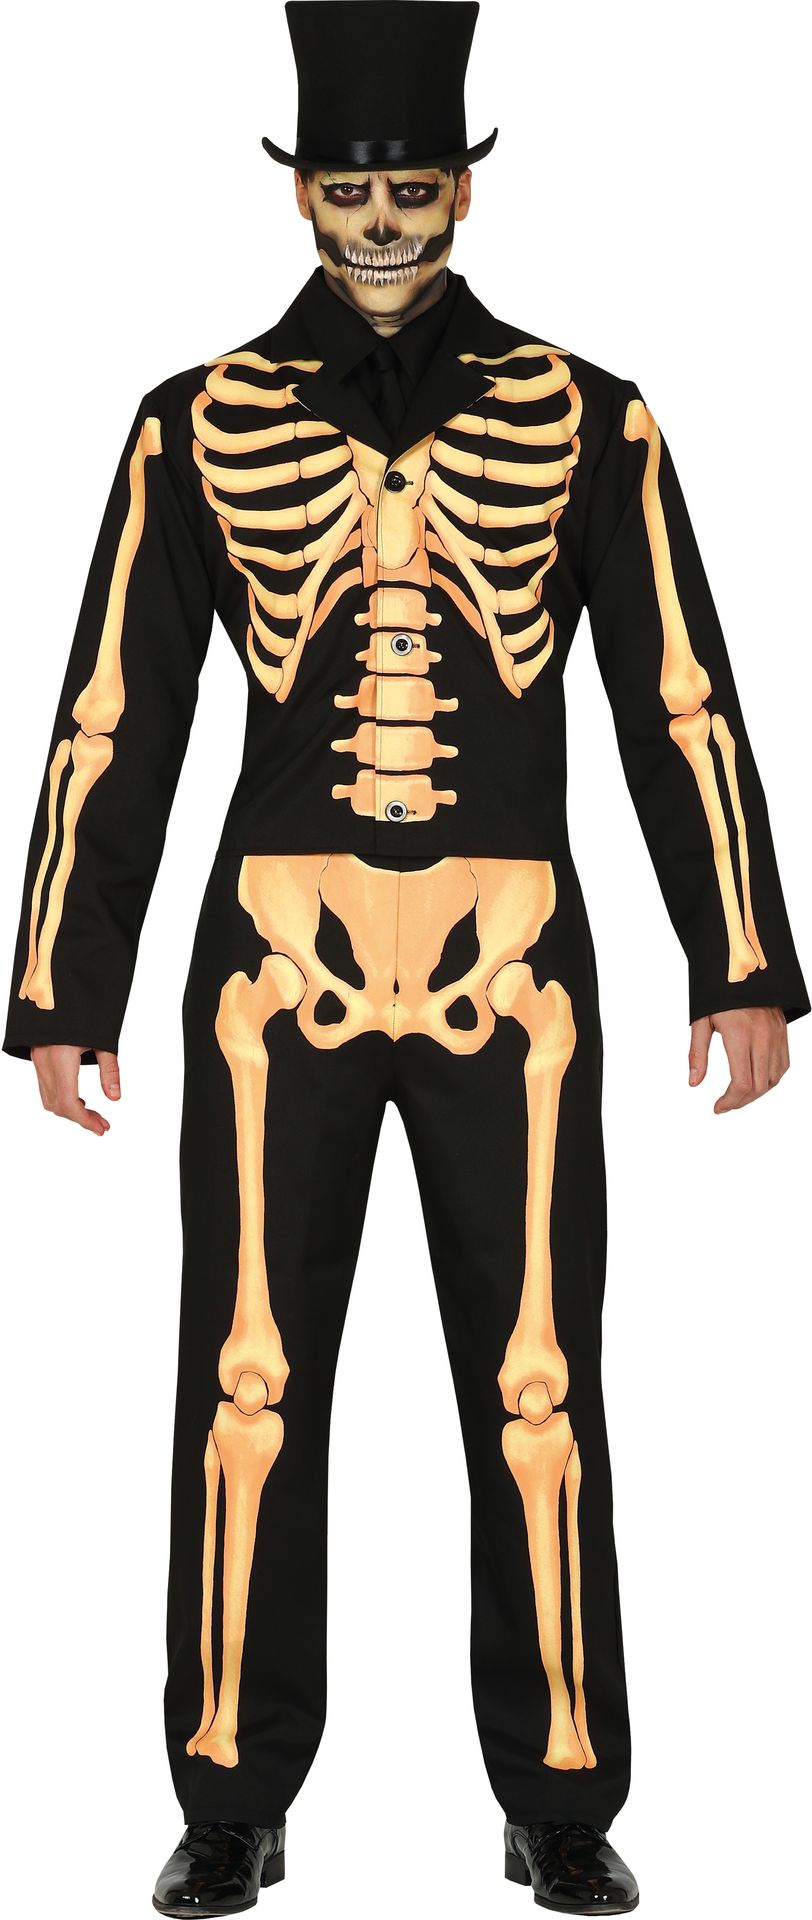 Skelet suit